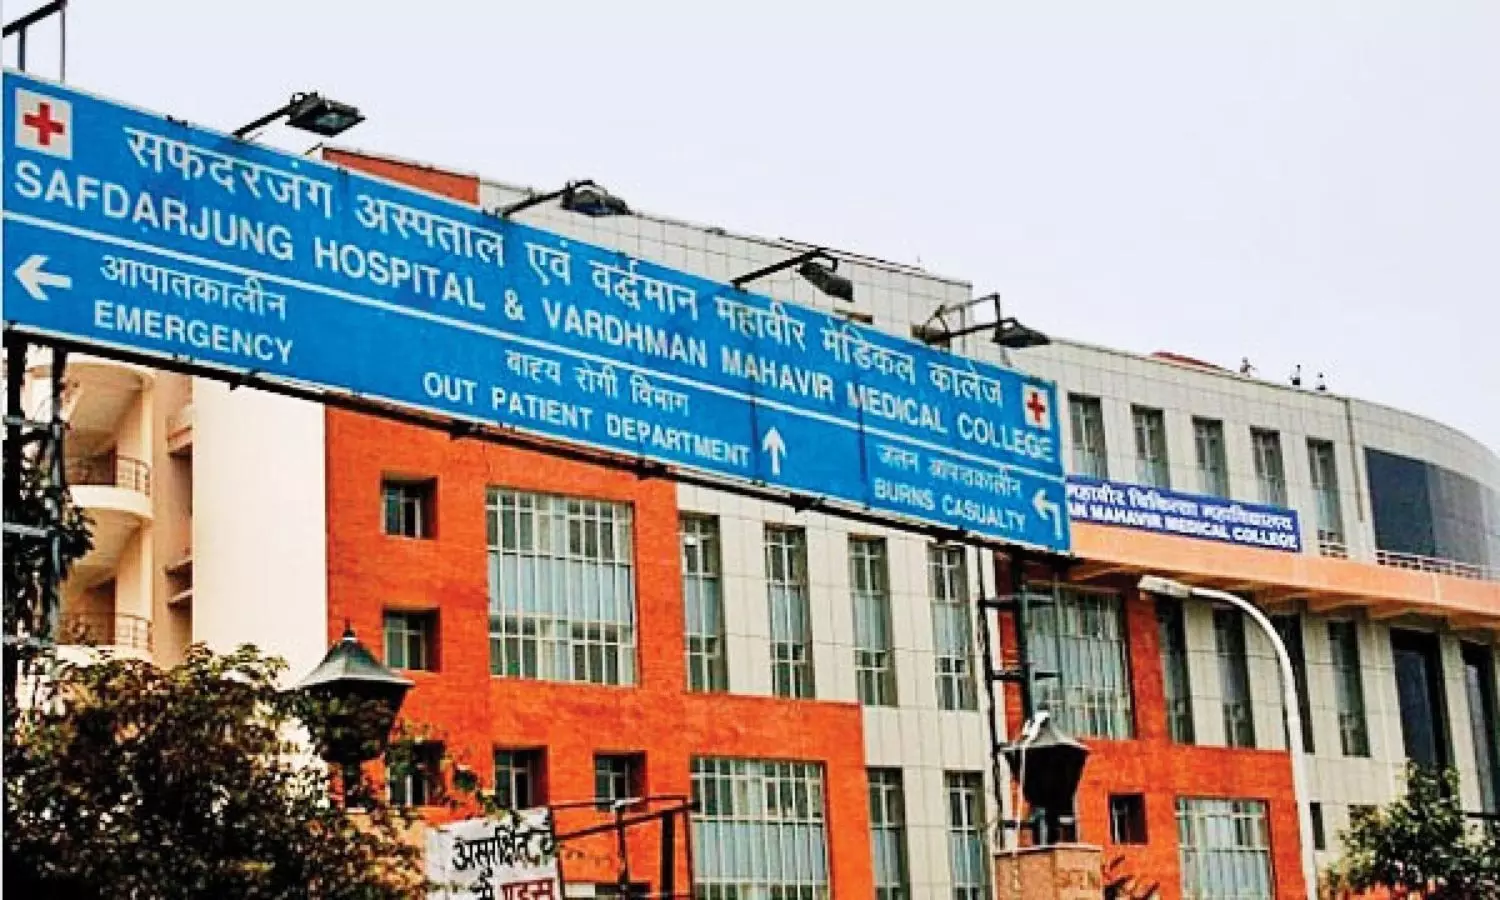 Safdarjung Hospital, Delhi